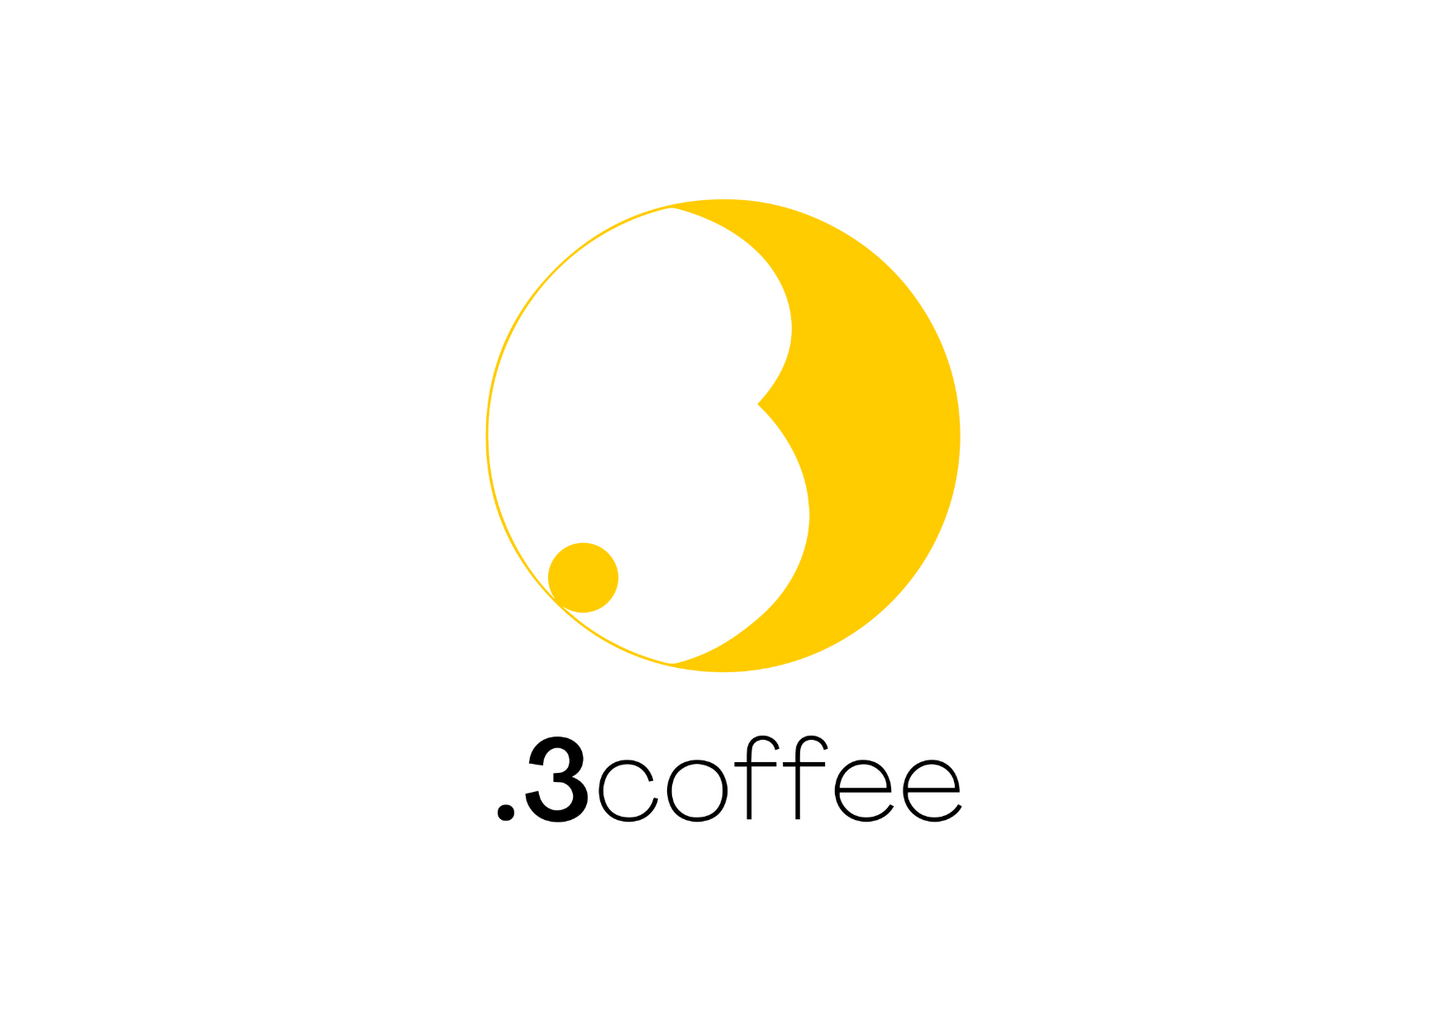 .3coffee Share Card